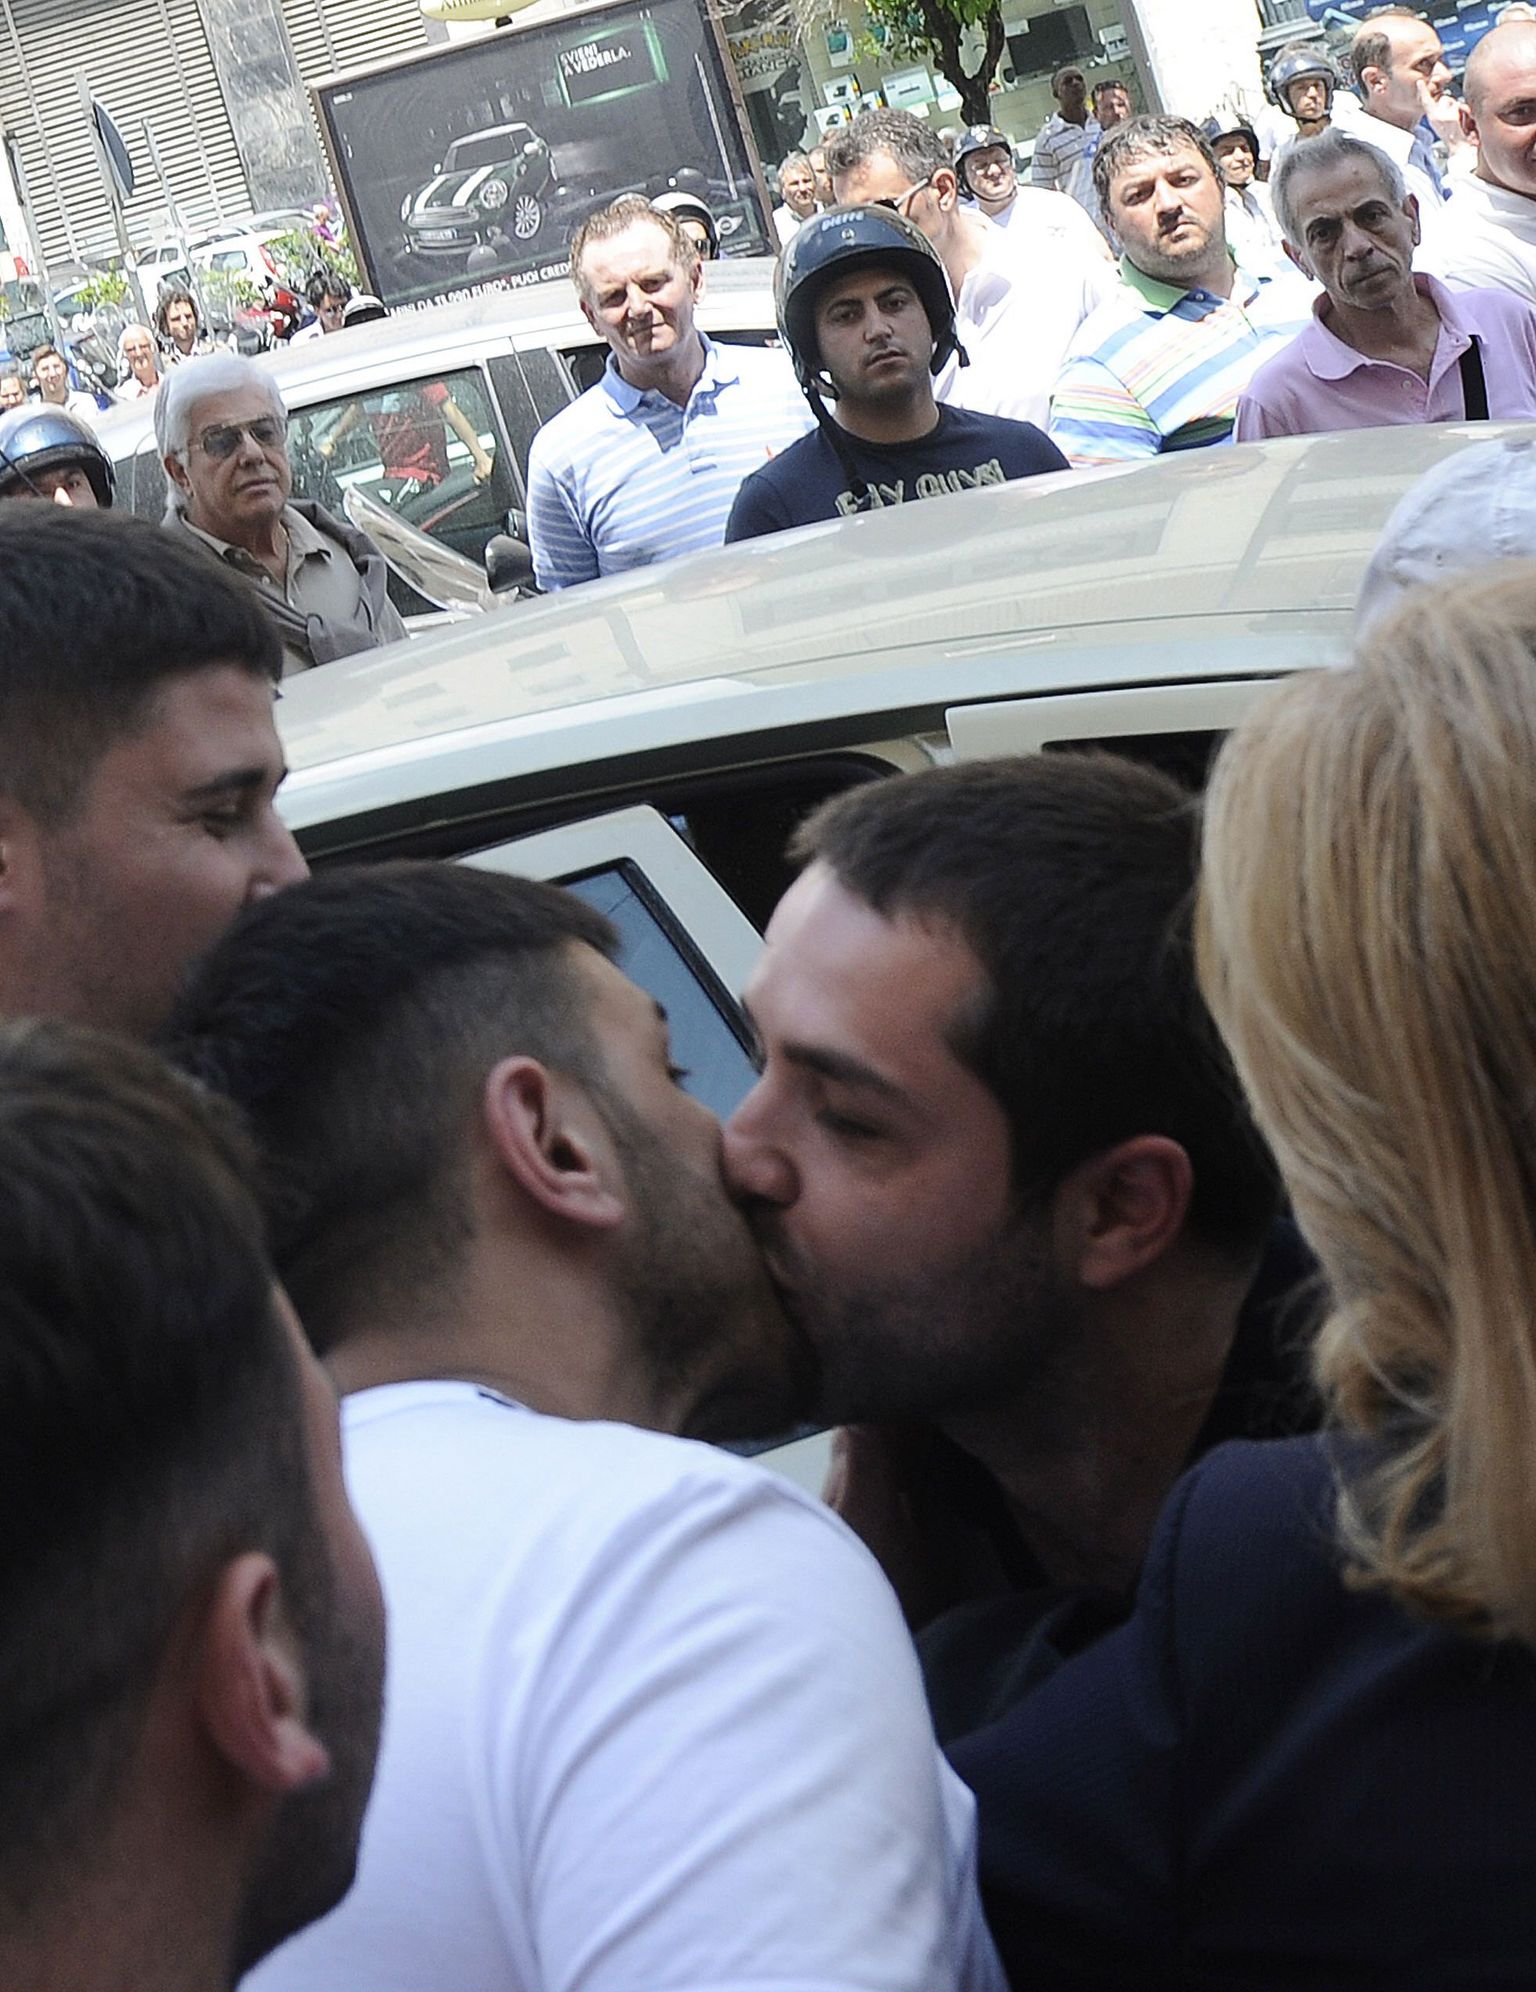 Itaalias ei tähenda meestevaheline suudlus sageli midagi homoseksuaalset. Sel pildil suudlevad pärast vahistamist kaks väidetavat maffia liiget. Nende suudlus peaks asjatundjate hinnangul tähendama vannet, et tuleb suu pidada.